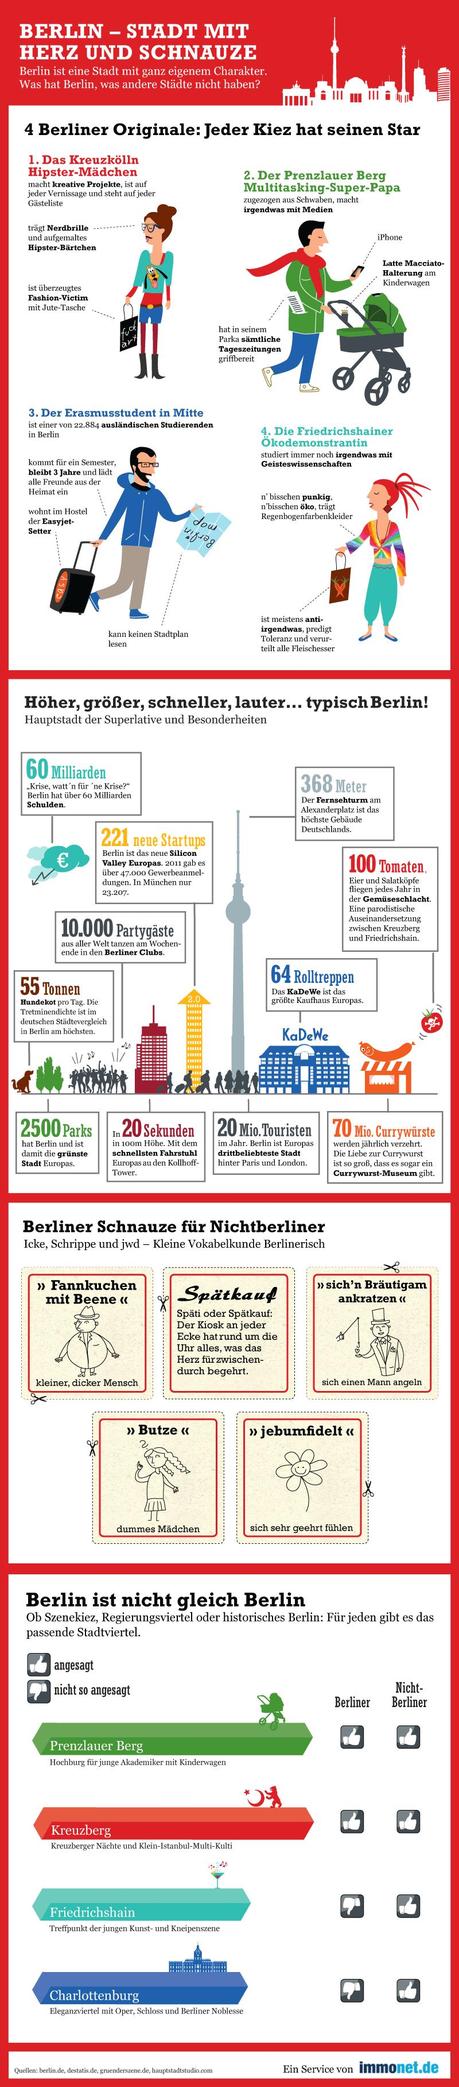 Immonet.de Infografik Berlin